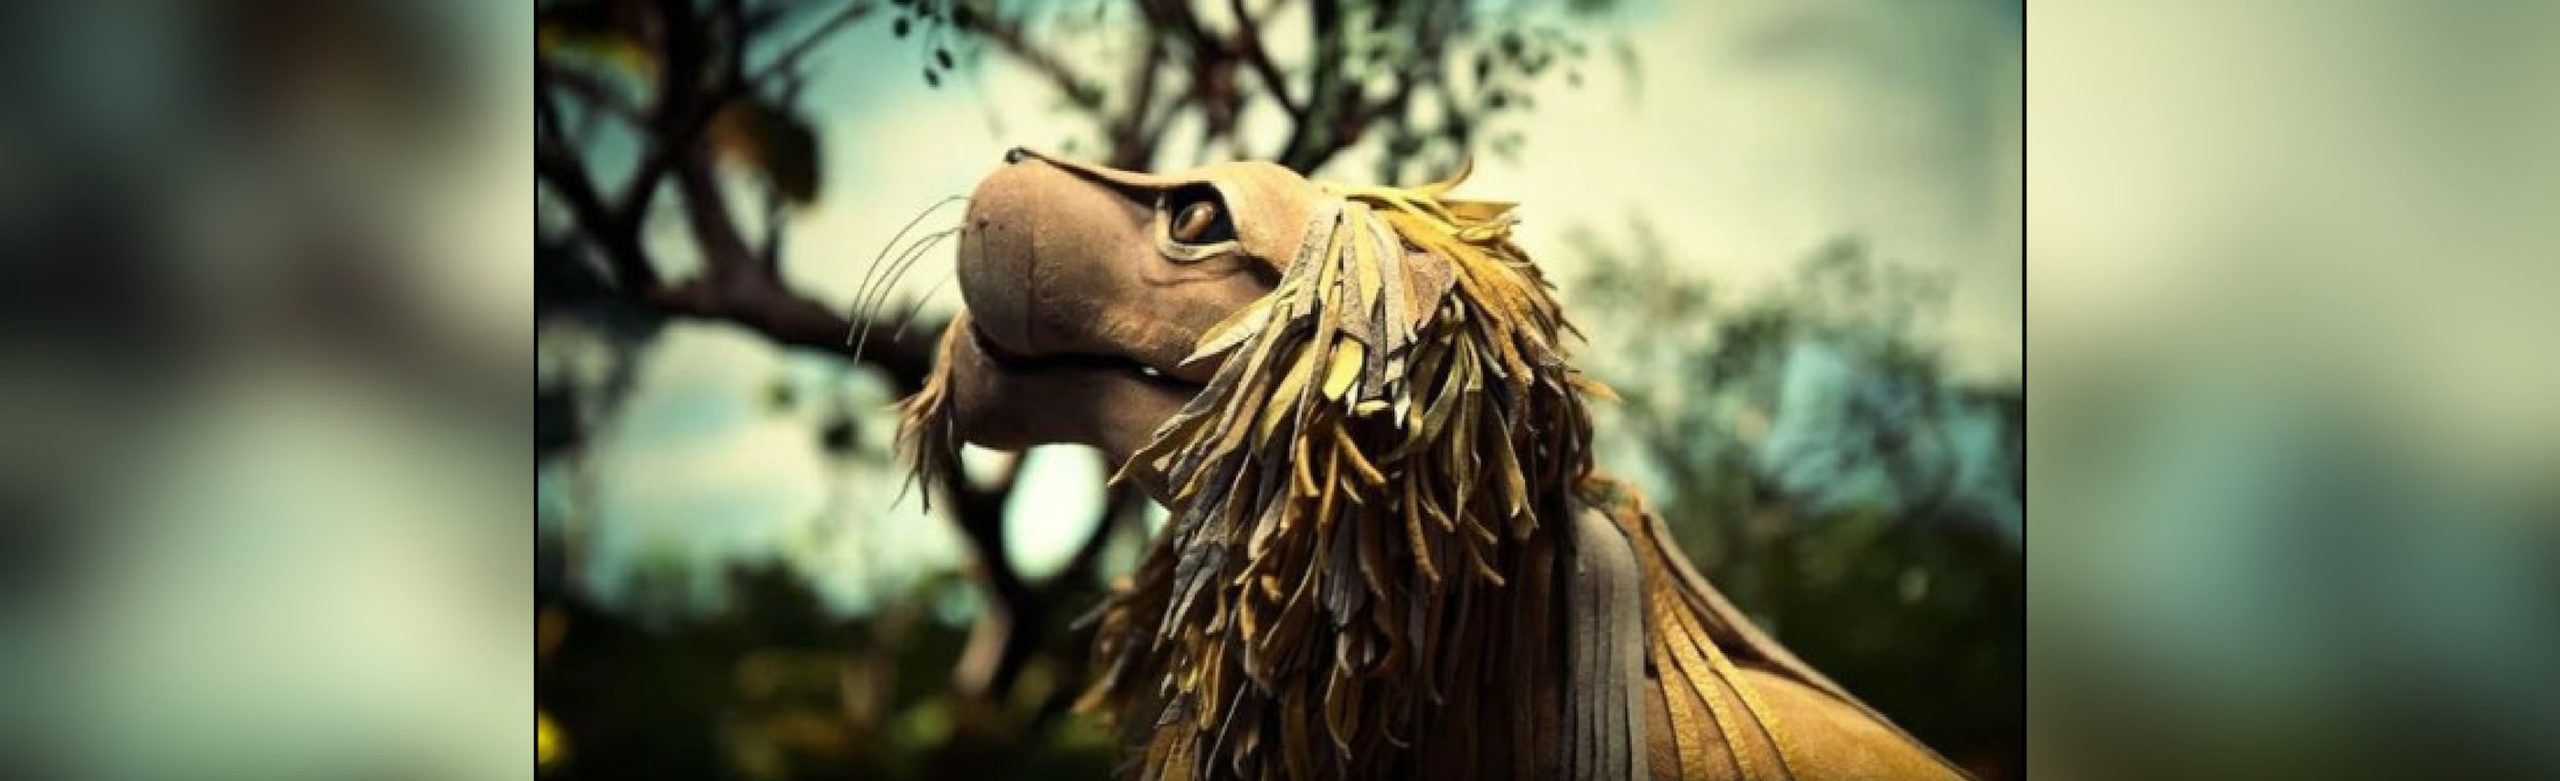 Neko Case Reveals Official Video for “Last Lion of Albion” Image